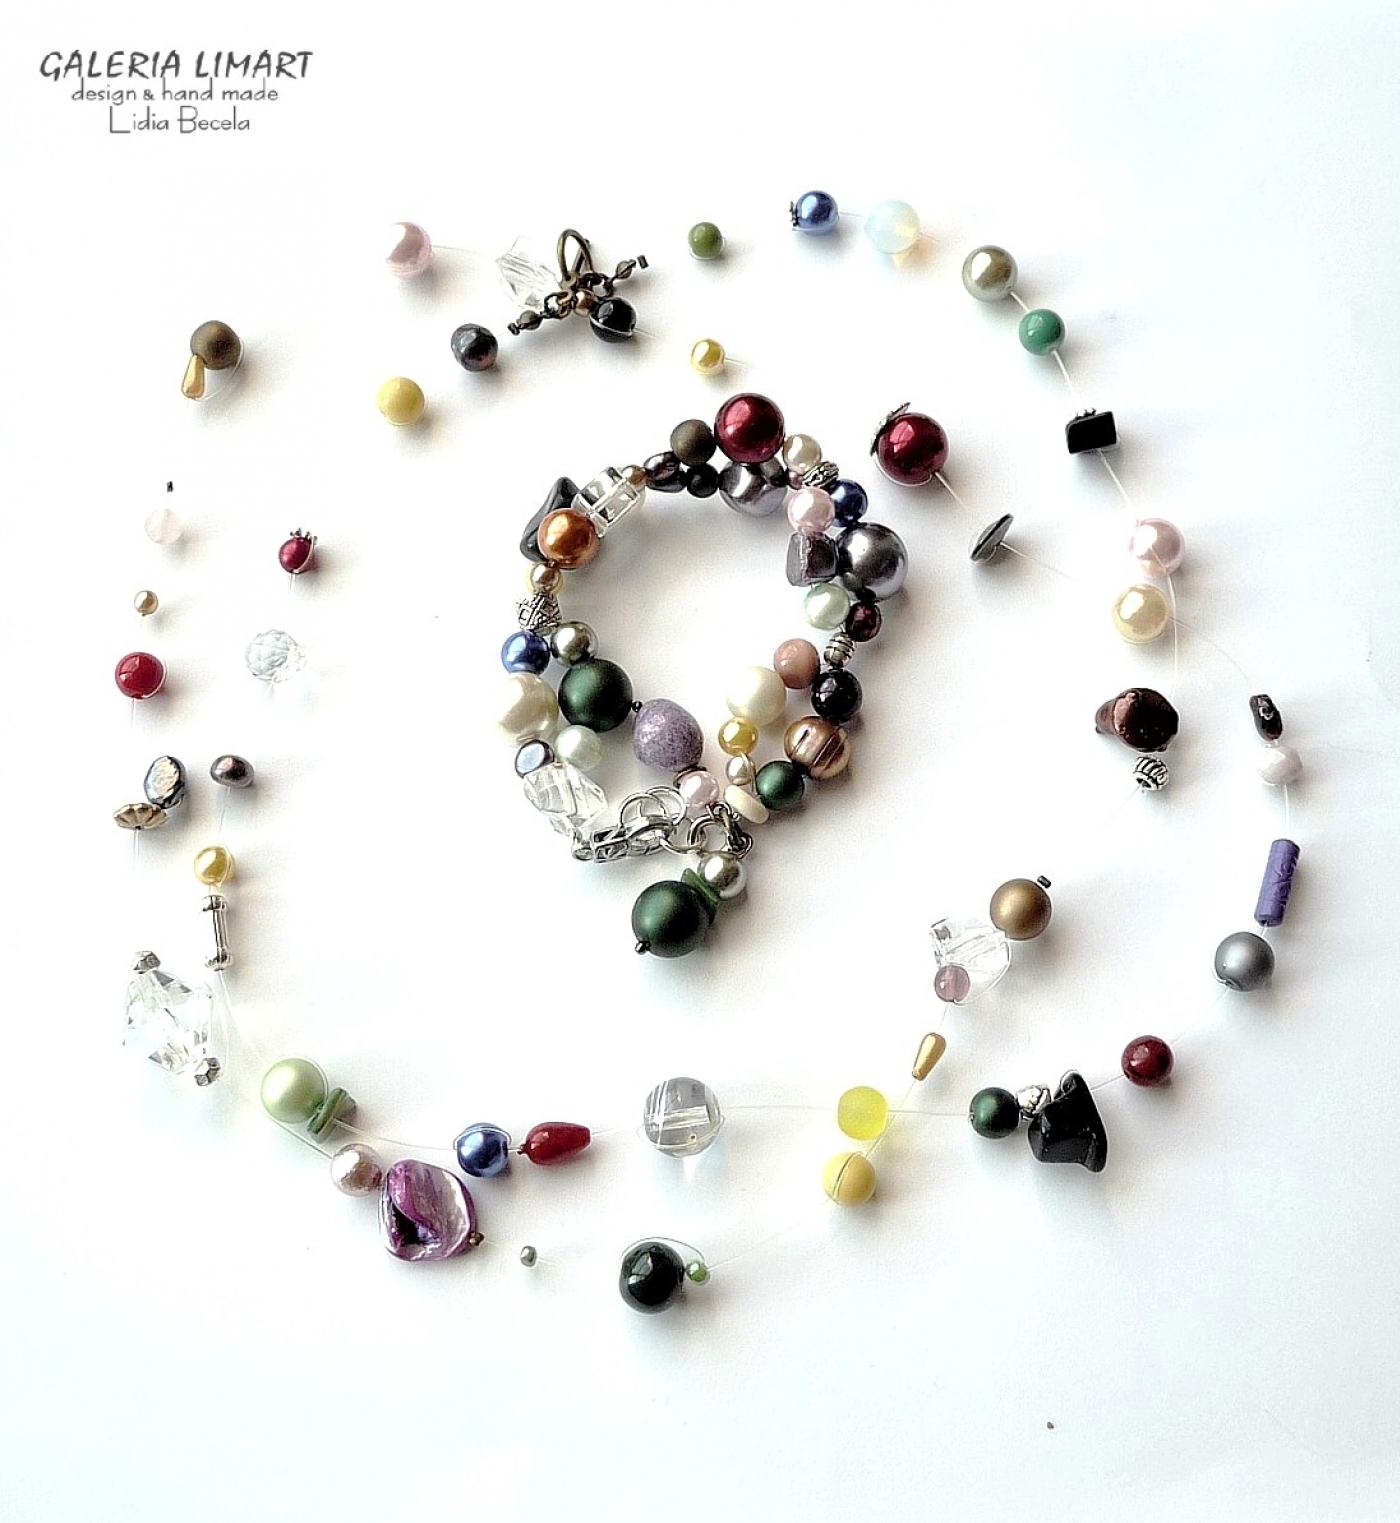 bogata kompozycja bajecznie kolorowych przeróżnych perełek z kryształkami, szkłem weneckim, minerałami w ciekawej i niebanalnej palecie barw